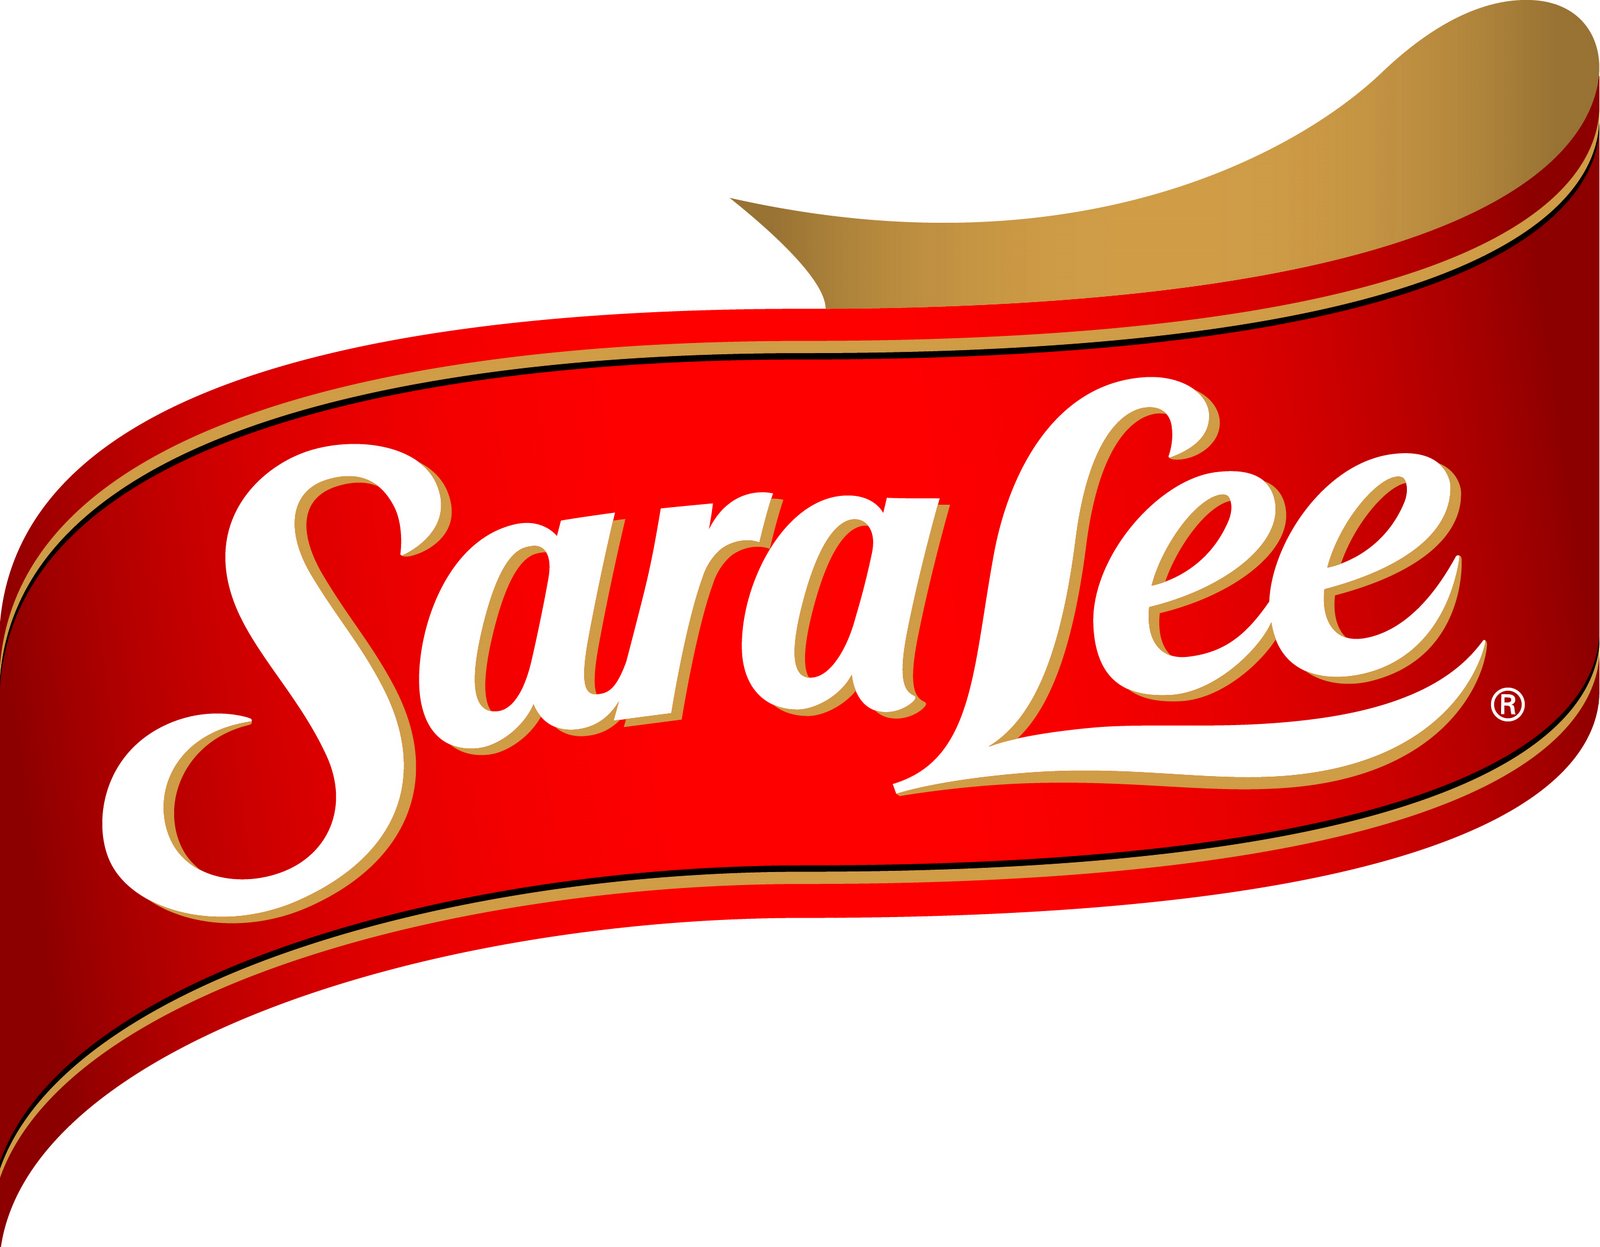 Sara-lee-logo.jpg